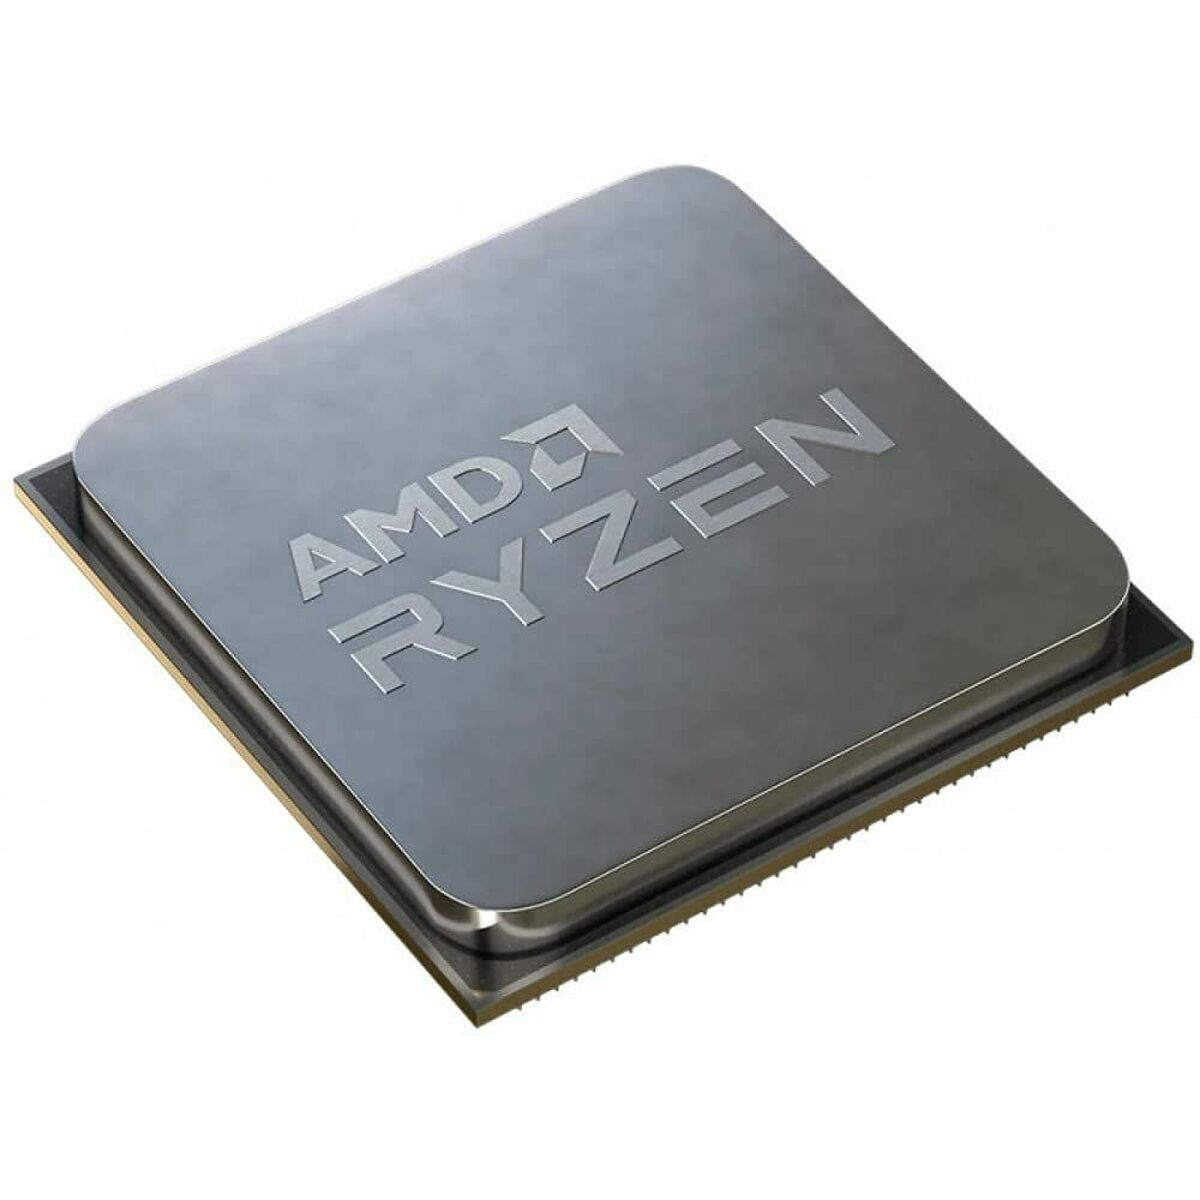 5700G Mehrfarbig Boxed-Kühler, Prozessor AMD mit